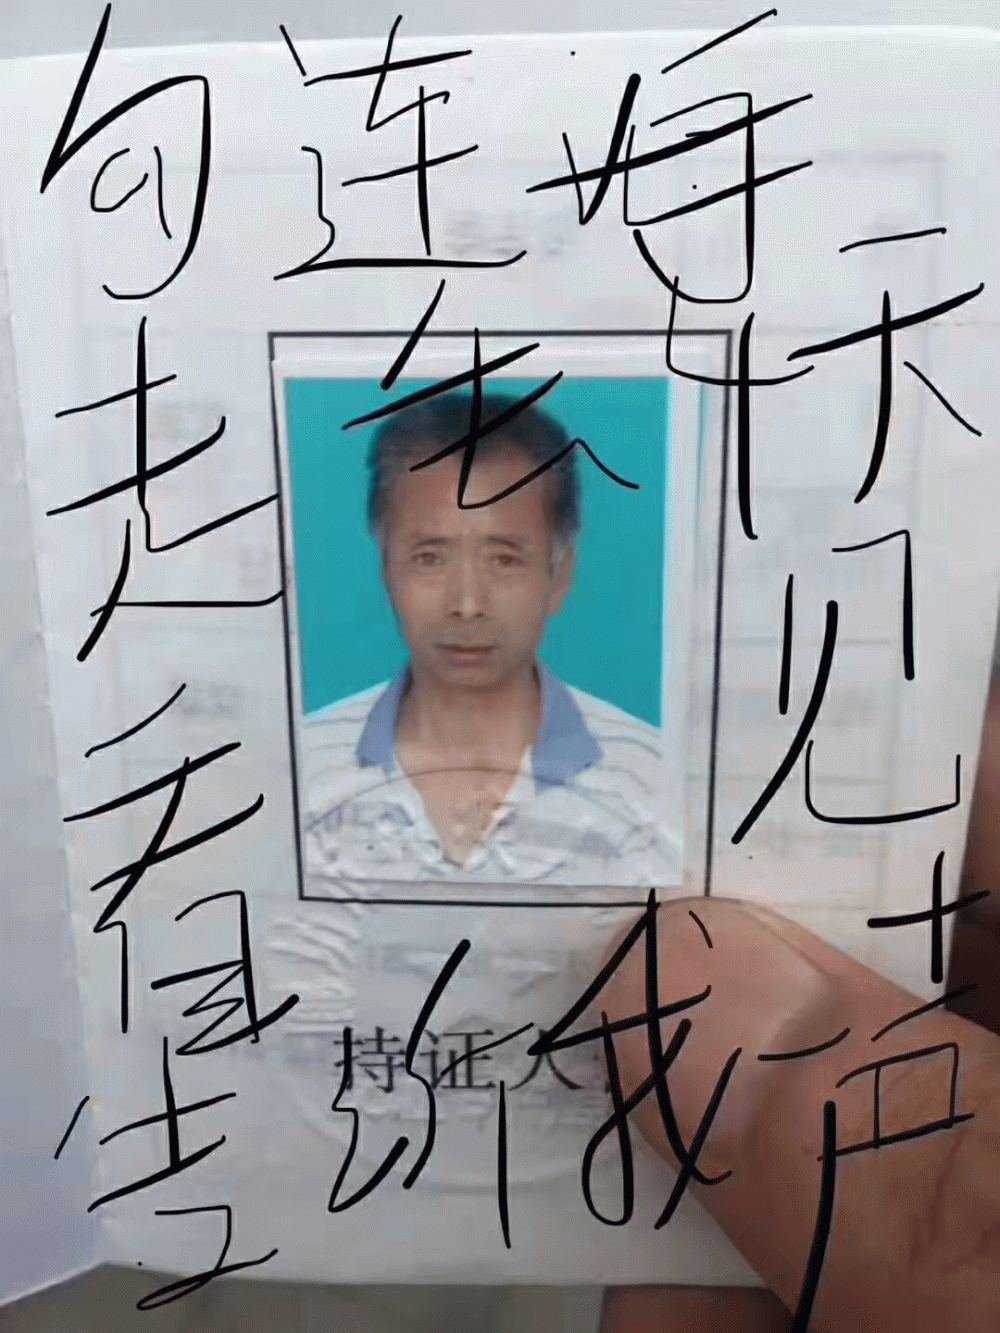 寻找2019年于河北省廊坊市香河县离家失踪的勾连海老人